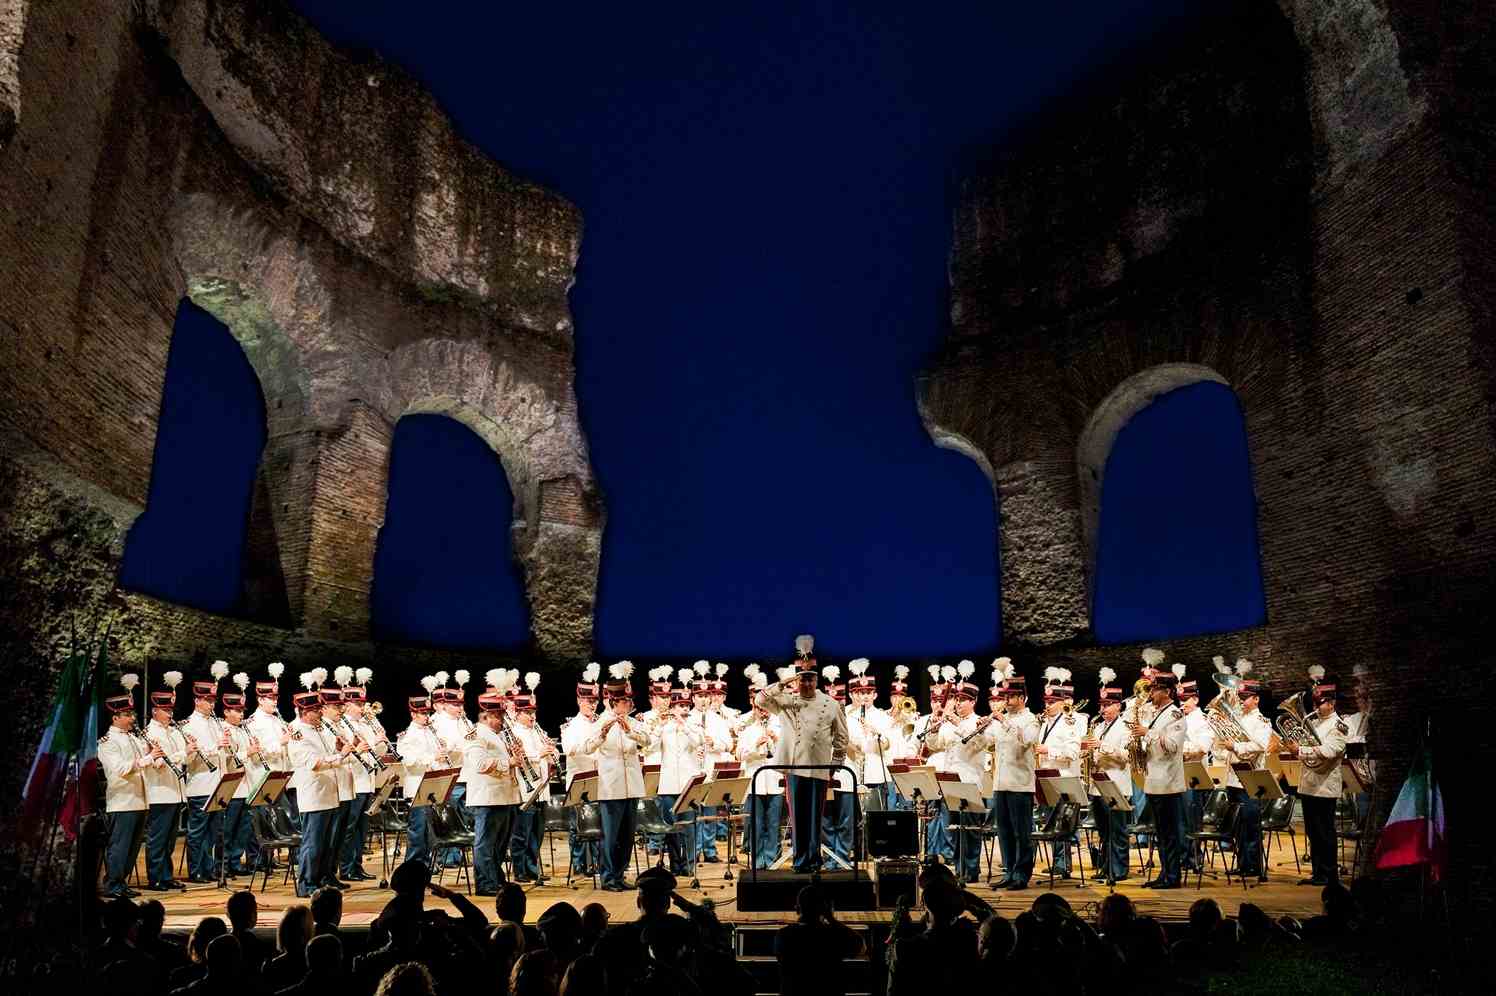 S.Croce Effetto Notte -10 notti di cultura, musica e cinema con l'Esercito Italiano